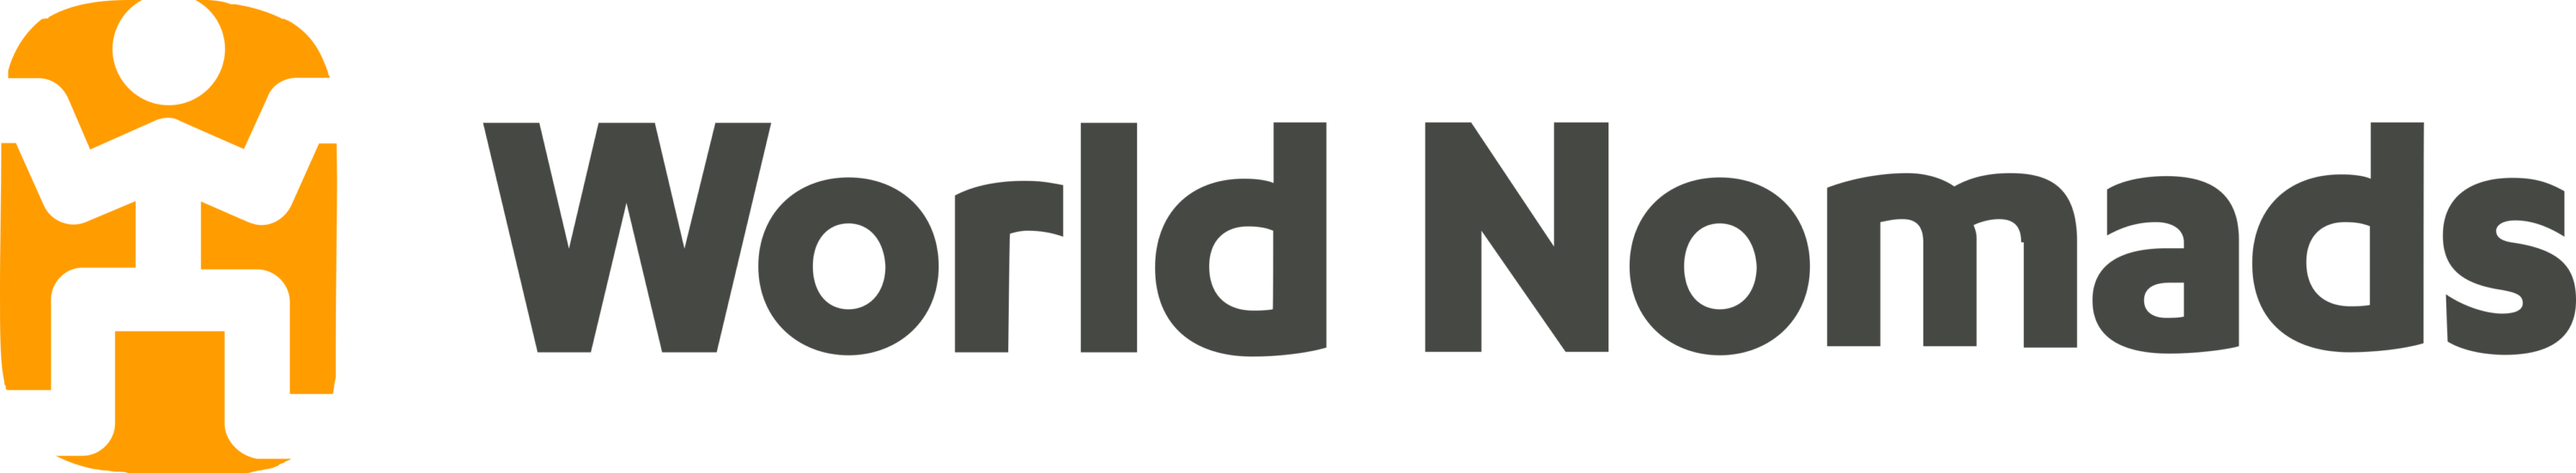 World Nomads Logo